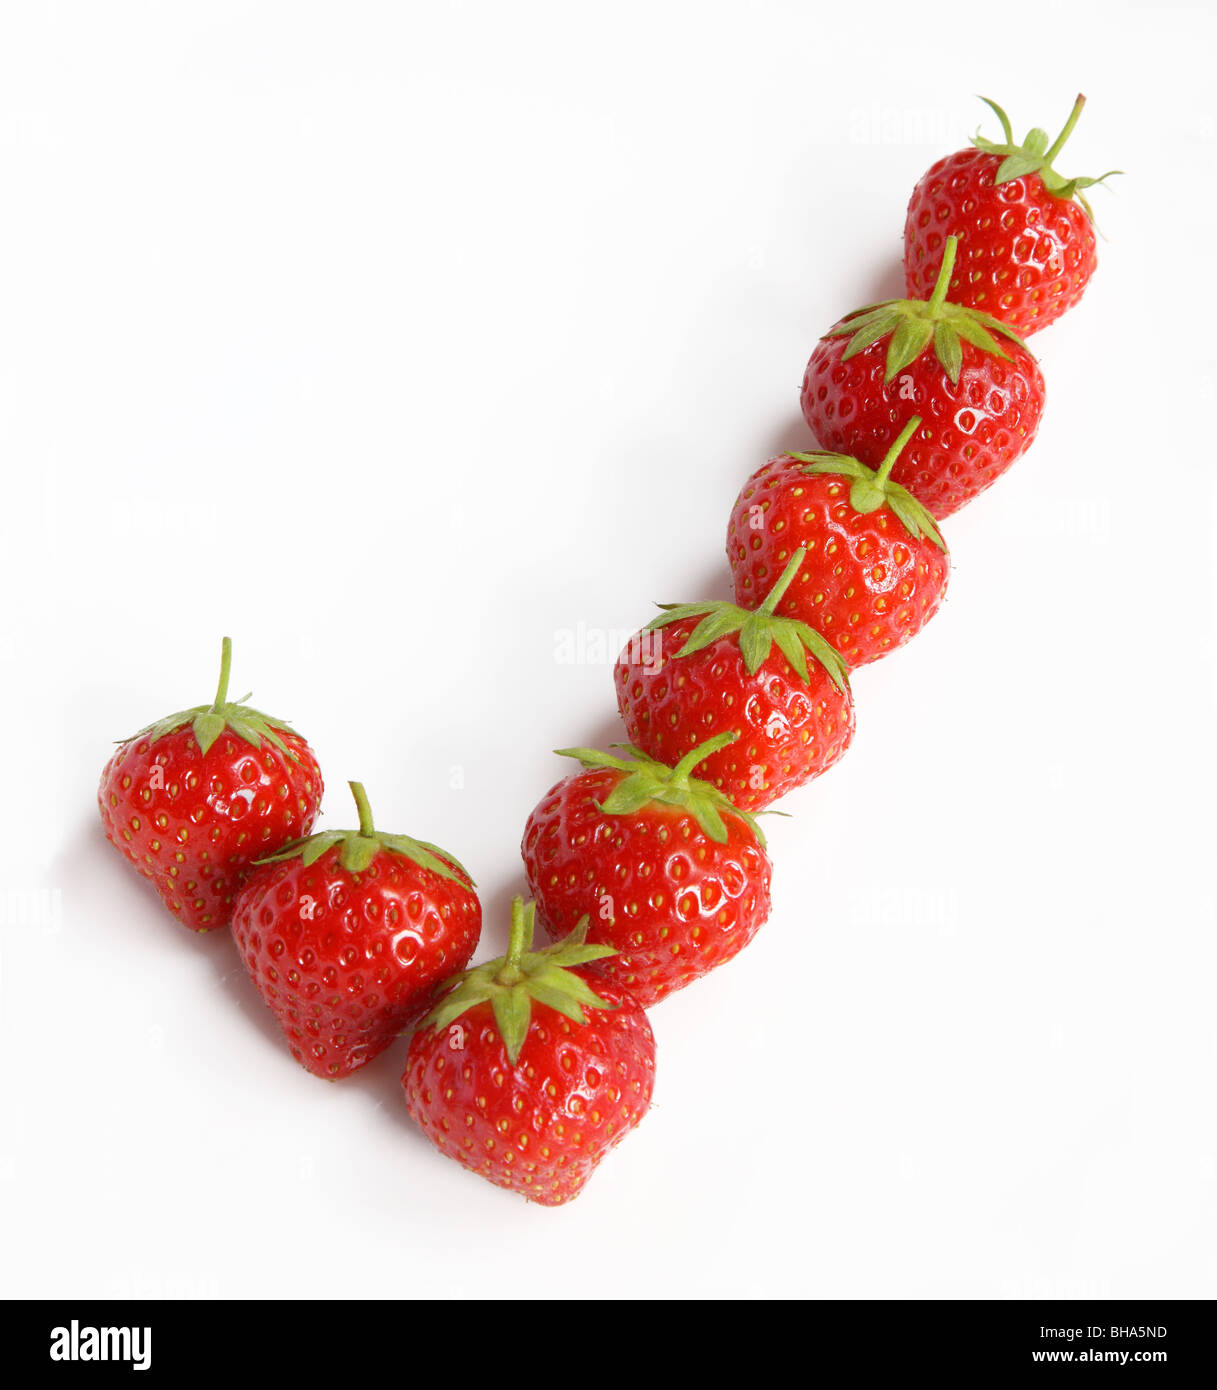 Acht Reife, frische Erdbeeren in der Lage, eine Zecke zu erstellen oder zu überprüfen. Stockfoto